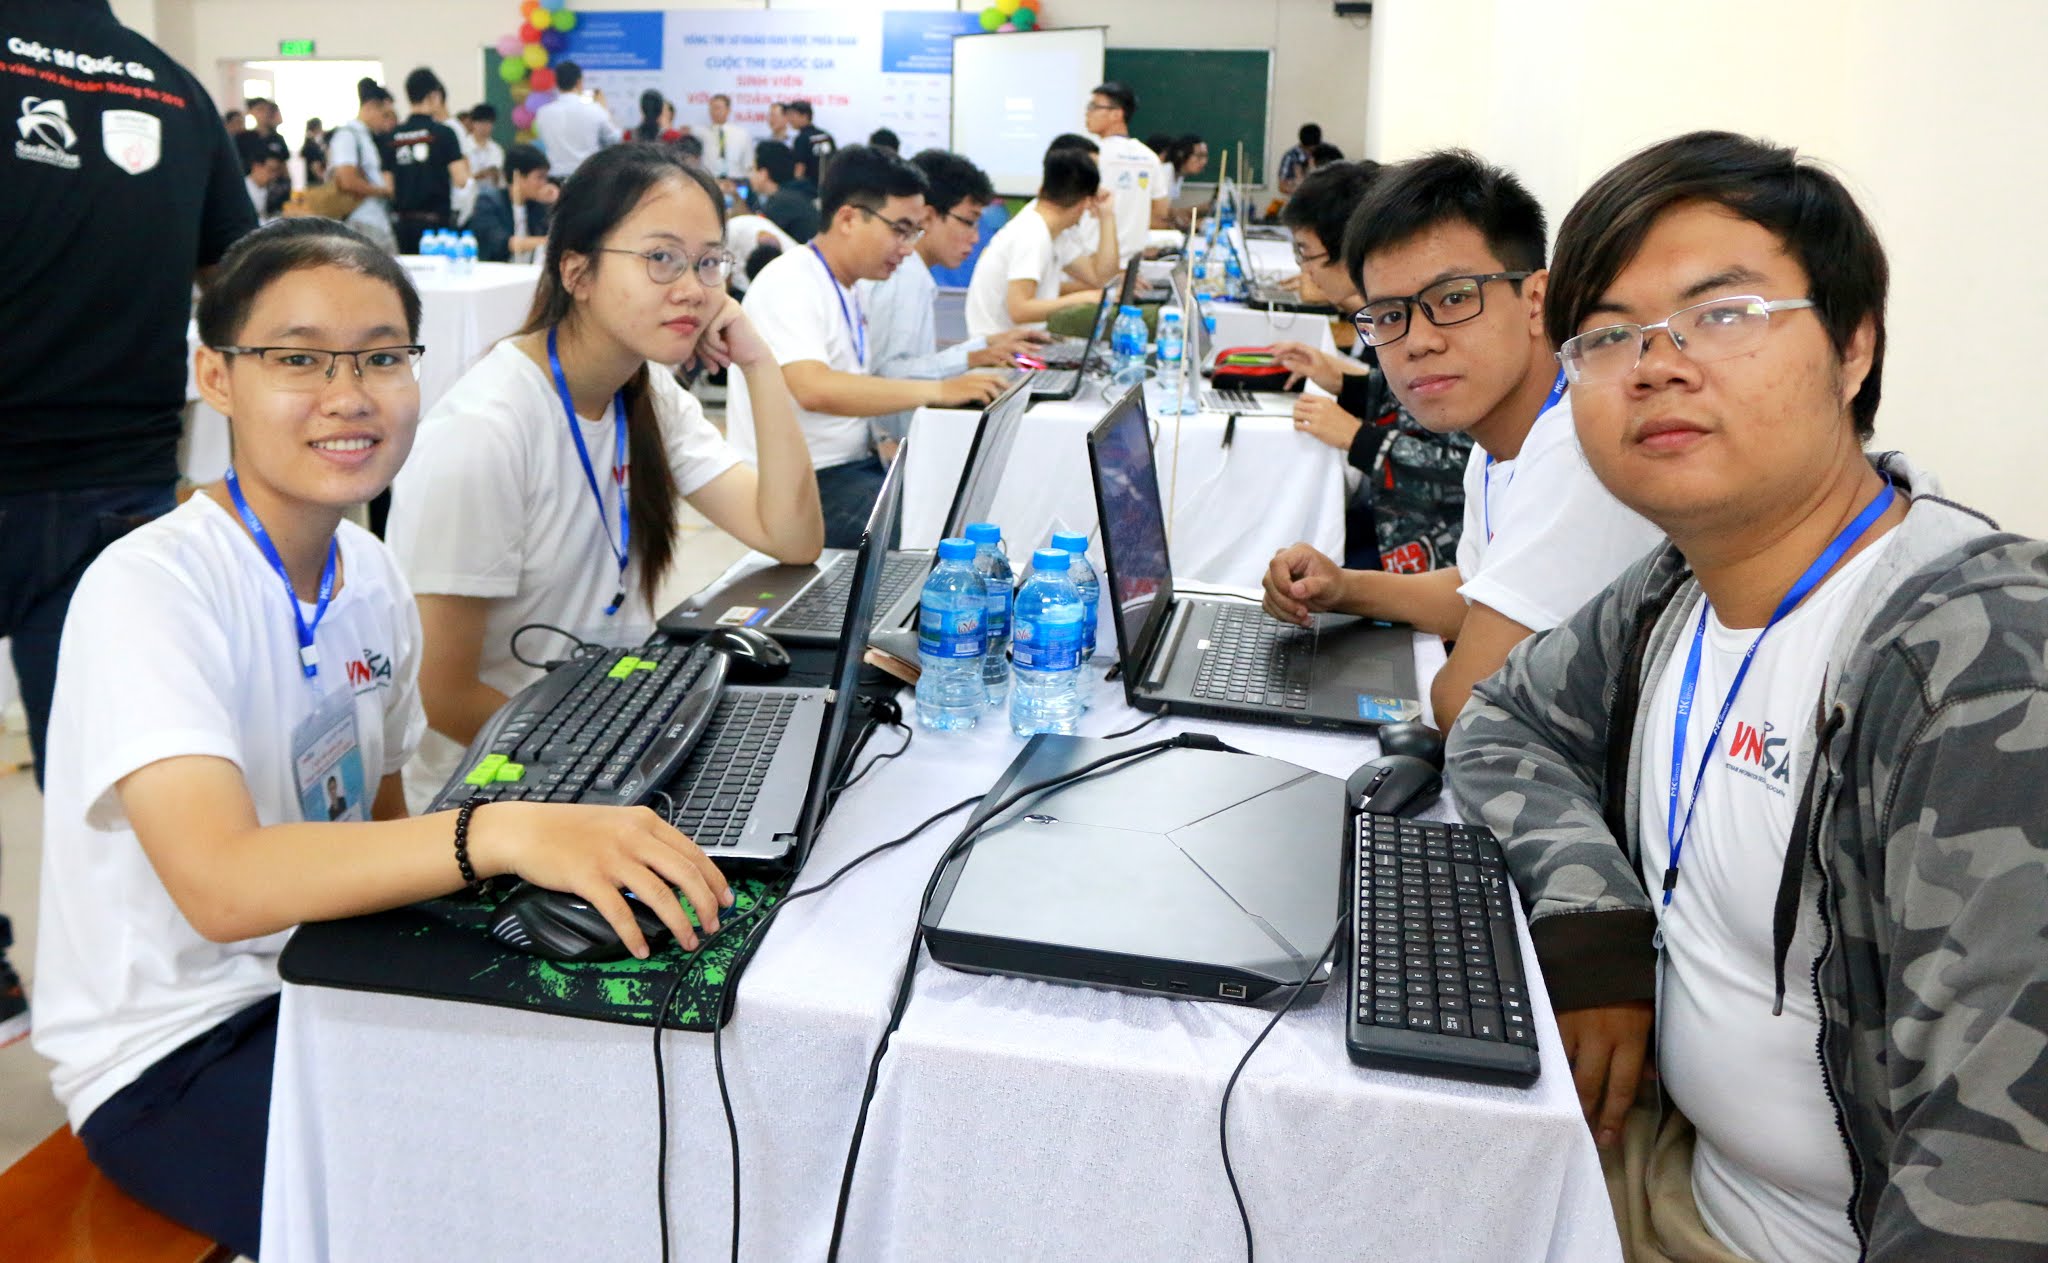 SIU chính thức đăng cai tổ chức cuộc thi “Sinh viên với An toàn thông tin ASEAN 2019” khu vực miền Nam